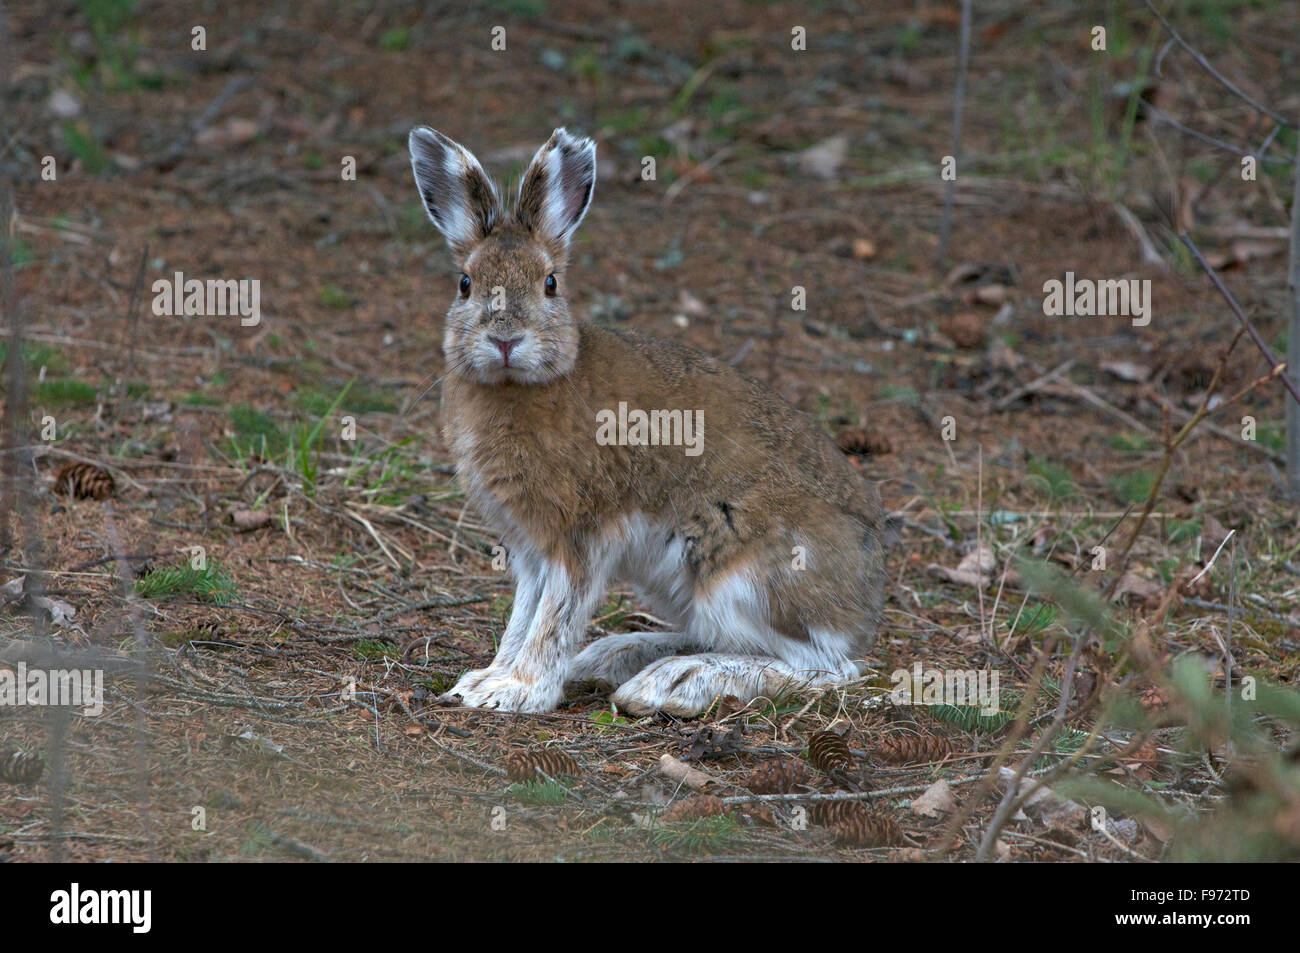 Le lièvre (Lepus americanus), aussi appelé le lièvre variable, le printemps, le parc provincial Quetico, ON, Canada Banque D'Images